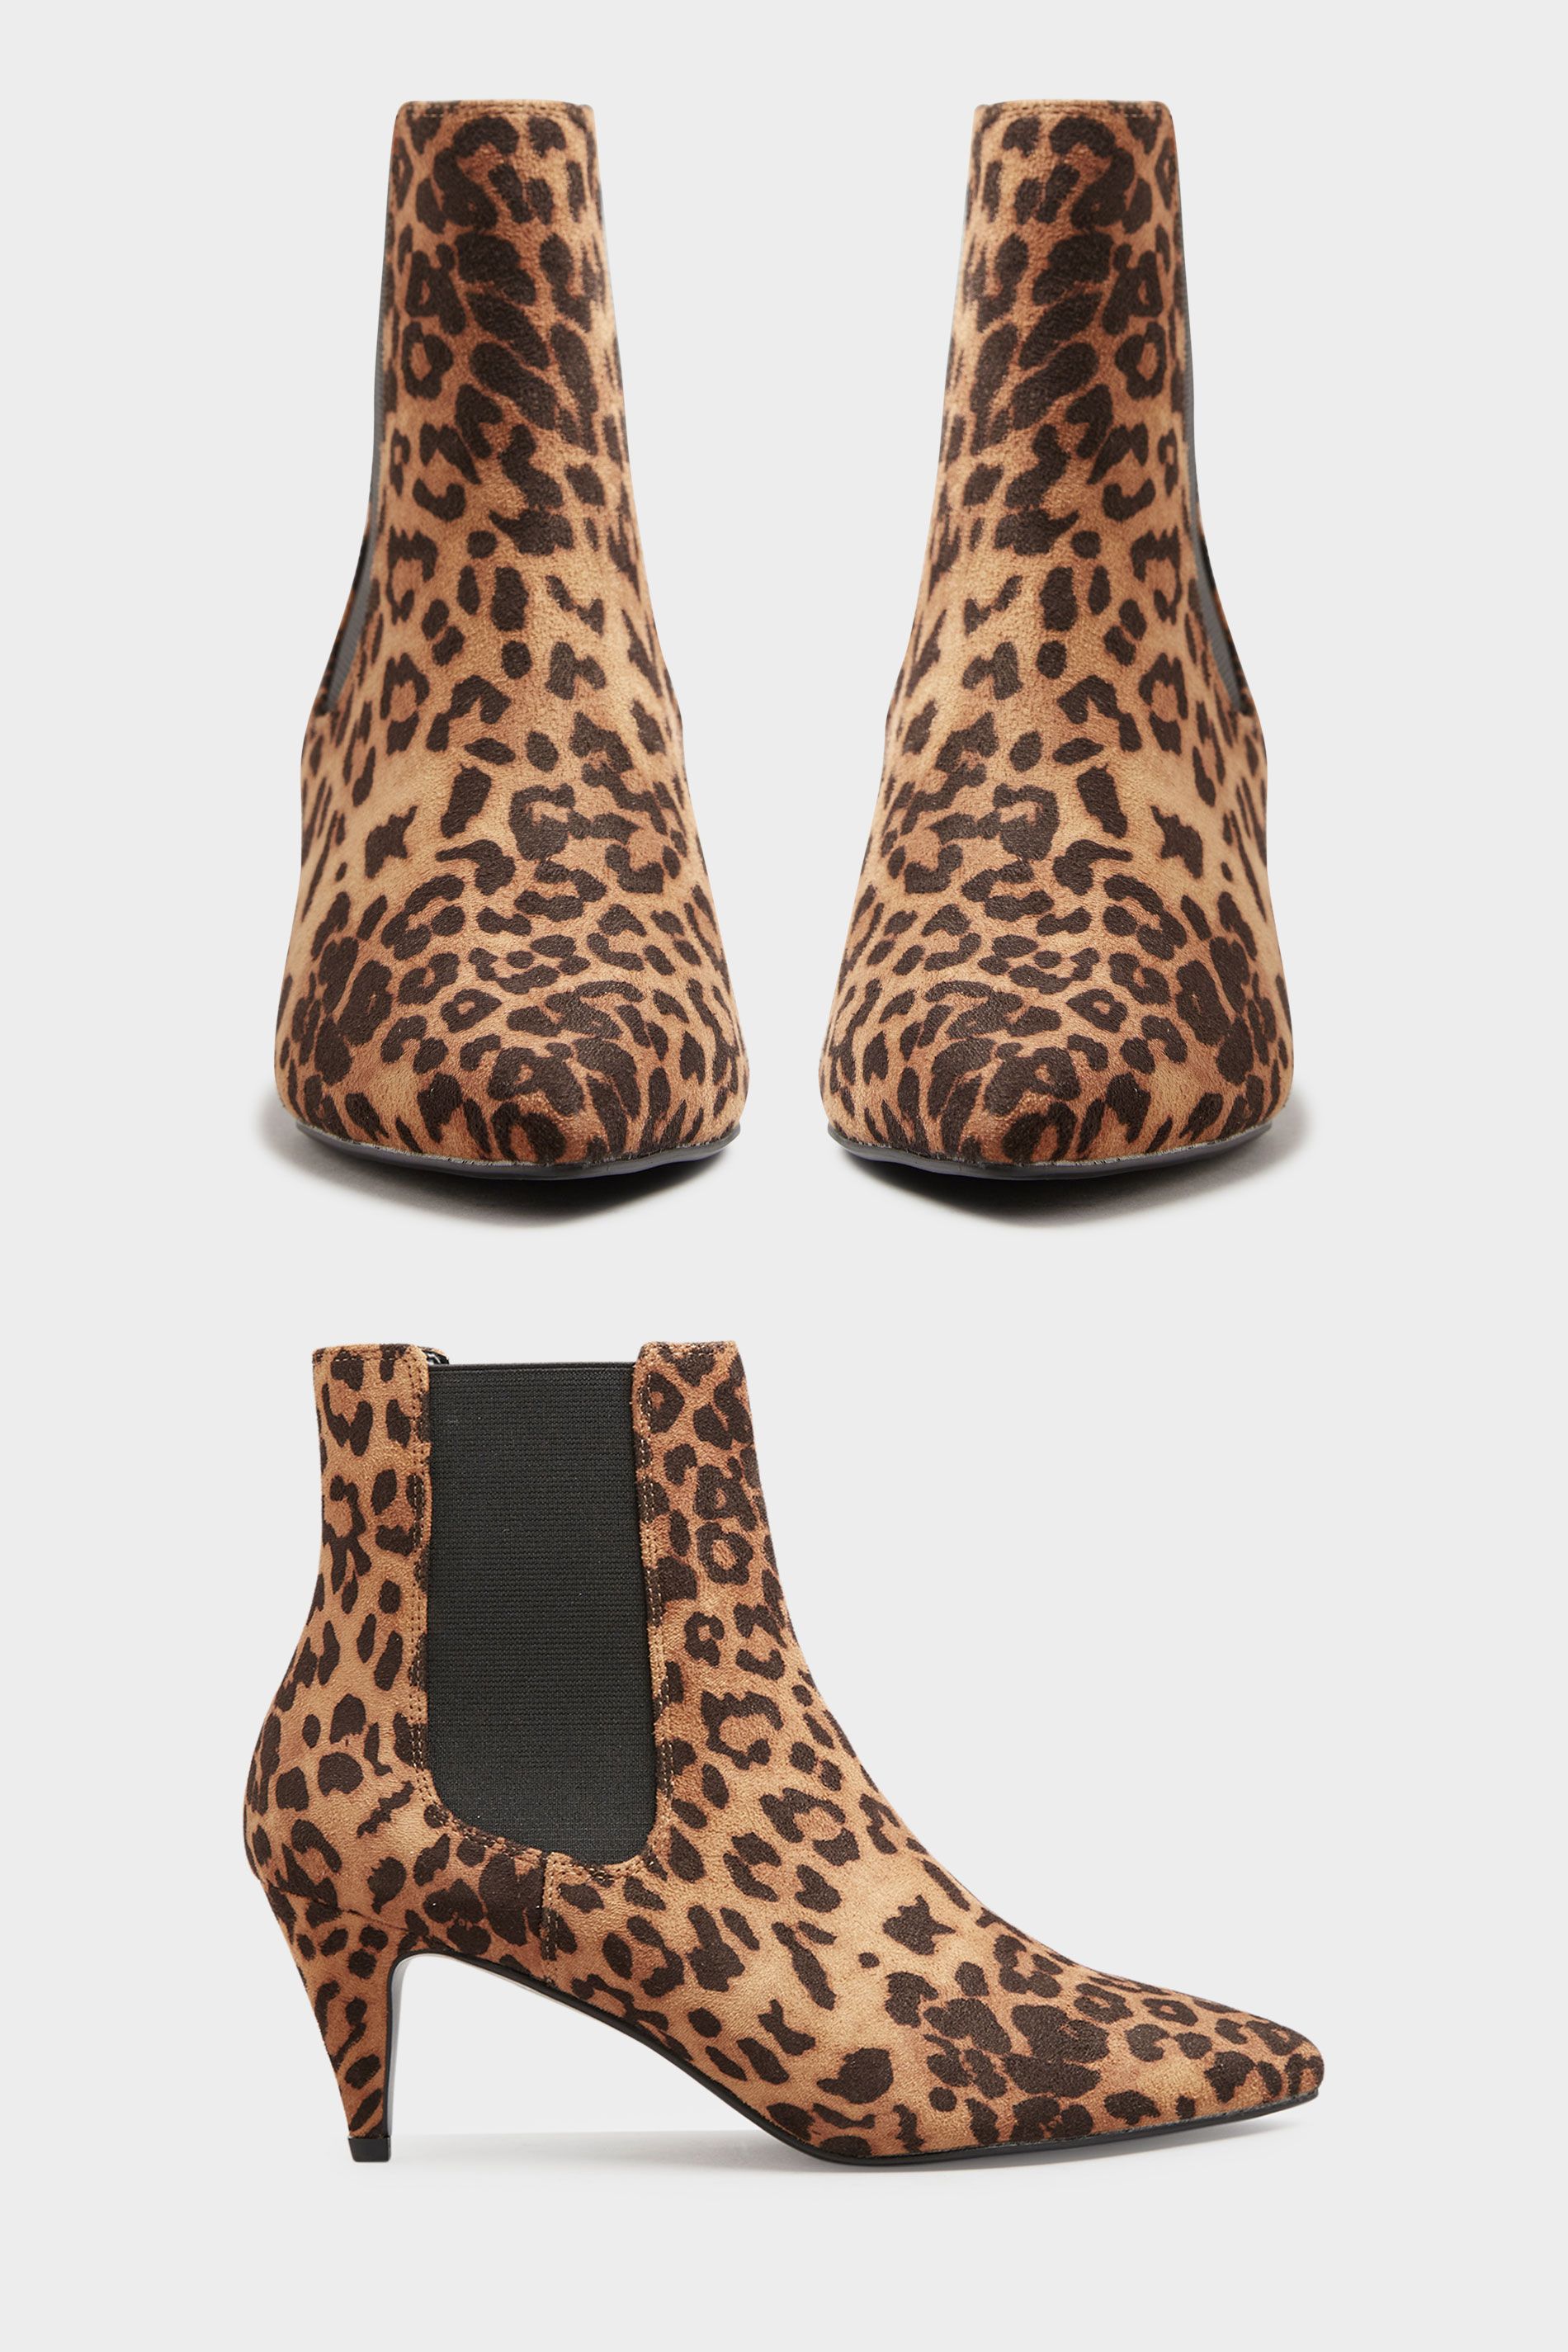 LTS Beige Leopard Print Heeled Boots | Long Tall Sally | Long Tall Sally